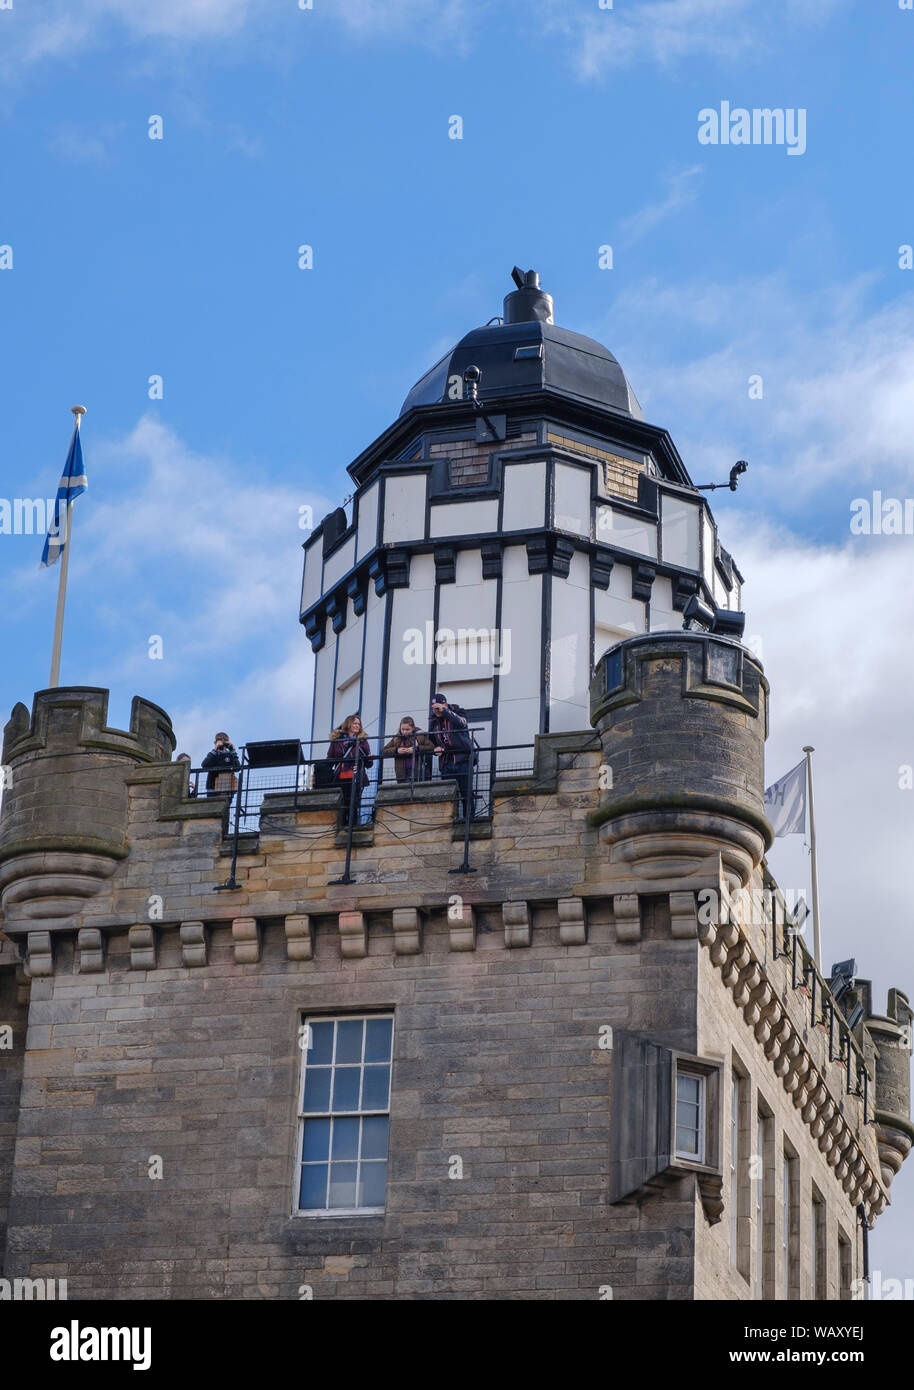 Touristen auf der Oberseite der Kamera Obscura Turm eine berühmte Sehenswürdigkeit in der Castle Hill Abschnitt der Royal Mile, Altstadt, Edinburgh Stockfoto